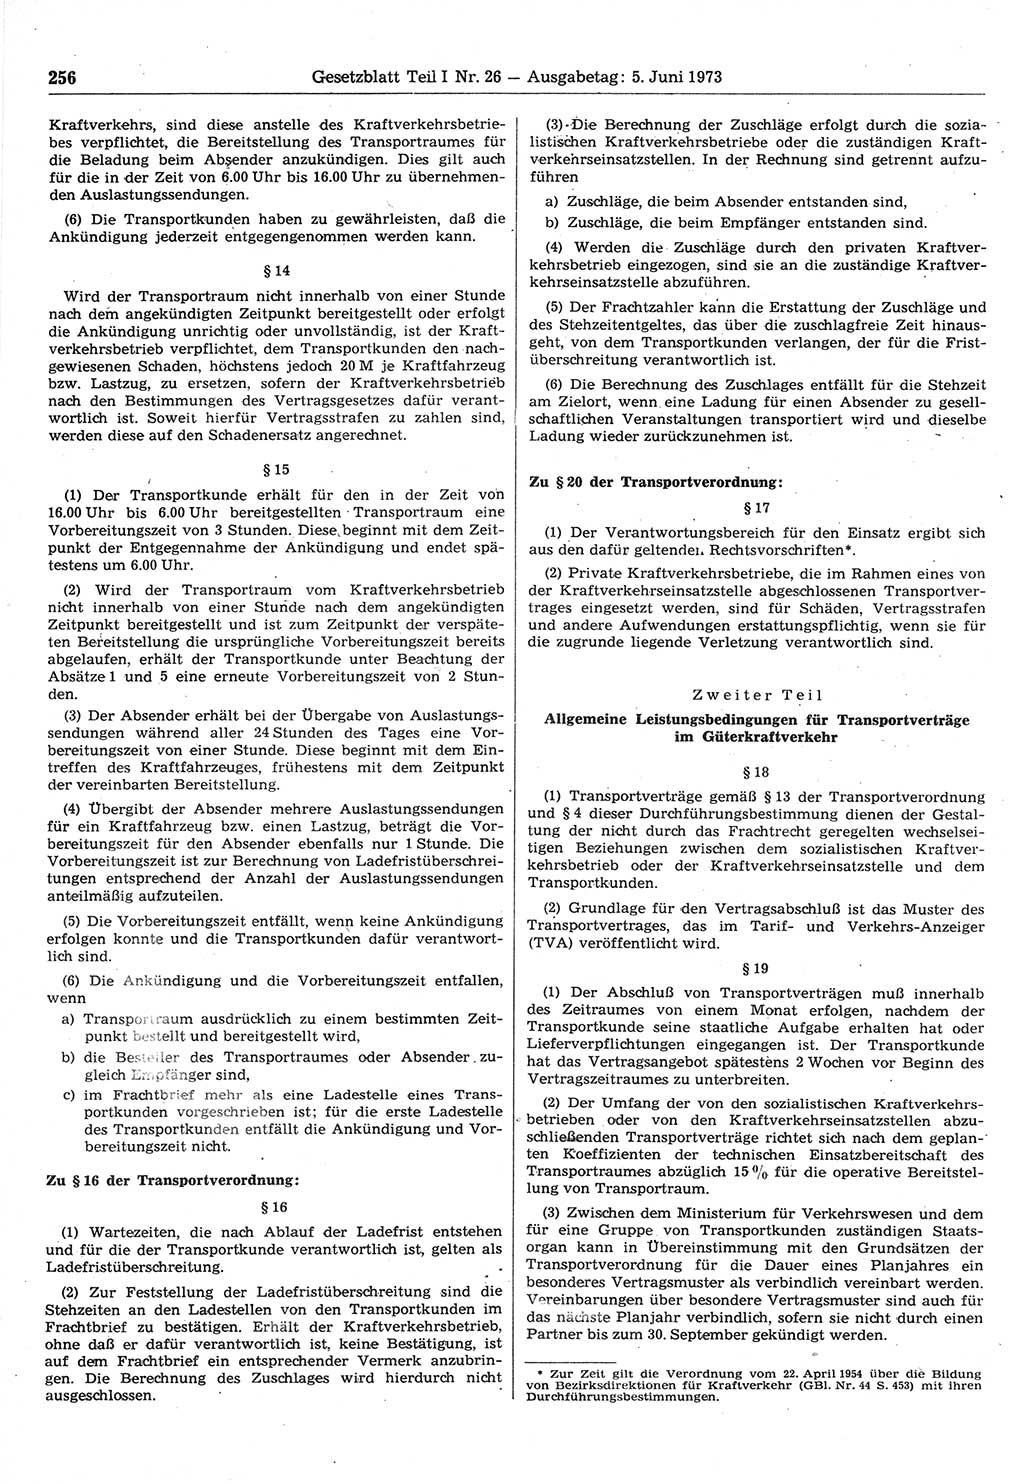 Gesetzblatt (GBl.) der Deutschen Demokratischen Republik (DDR) Teil Ⅰ 1973, Seite 256 (GBl. DDR Ⅰ 1973, S. 256)